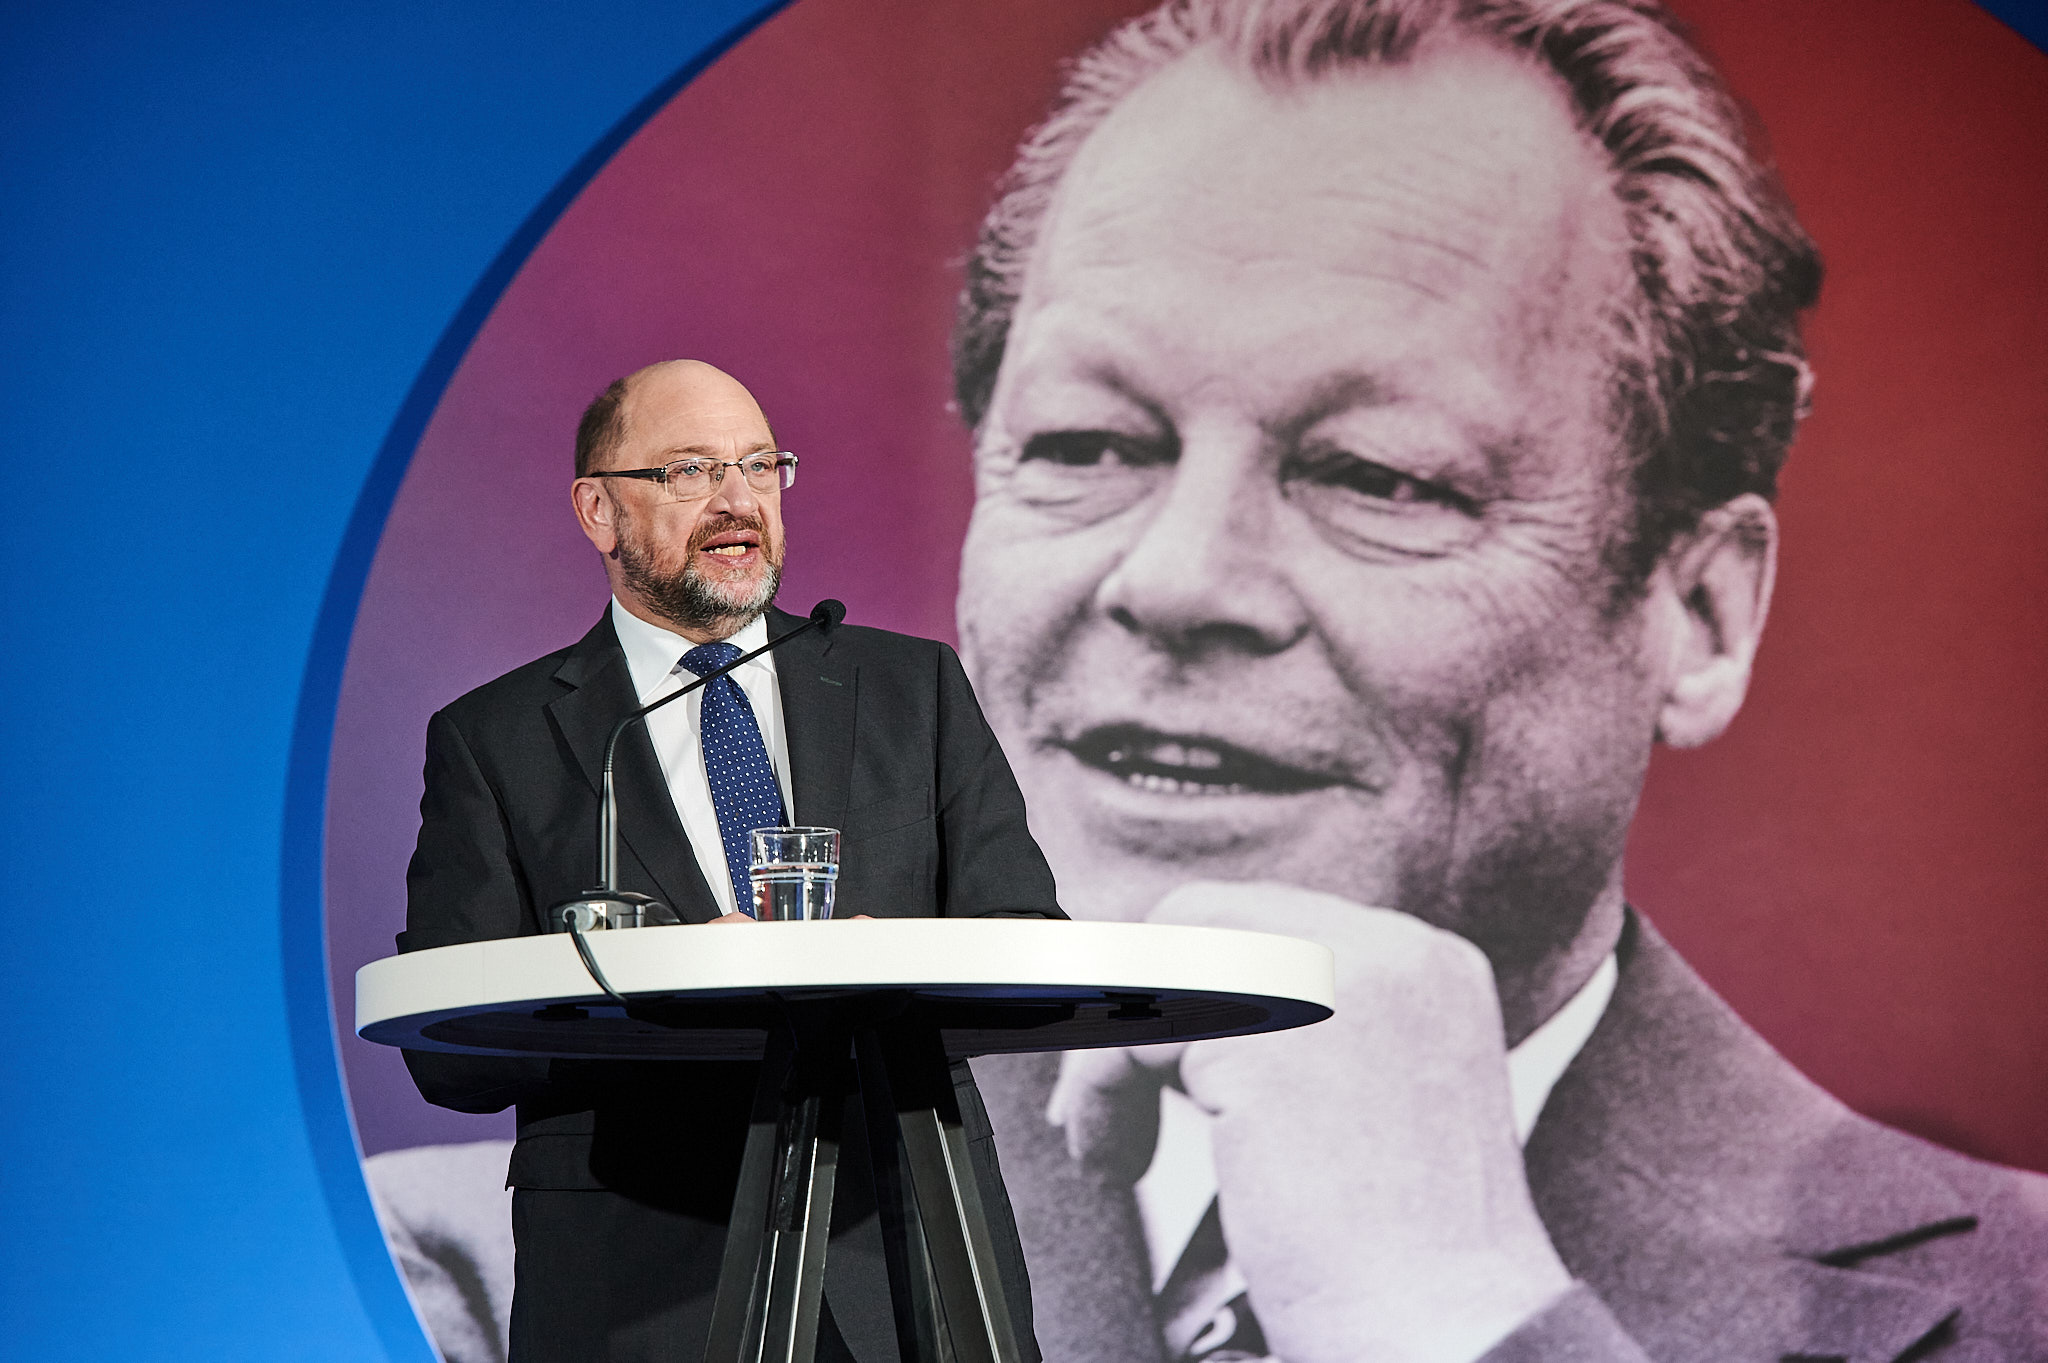 50 Jahre Friedensnobelpreis für Willy Brandt: Die Friedrich-Ebert-Stiftung um ihren Vorsitzenden Martin Schulz hat ein umfangreiches Programm zusammengestellt.